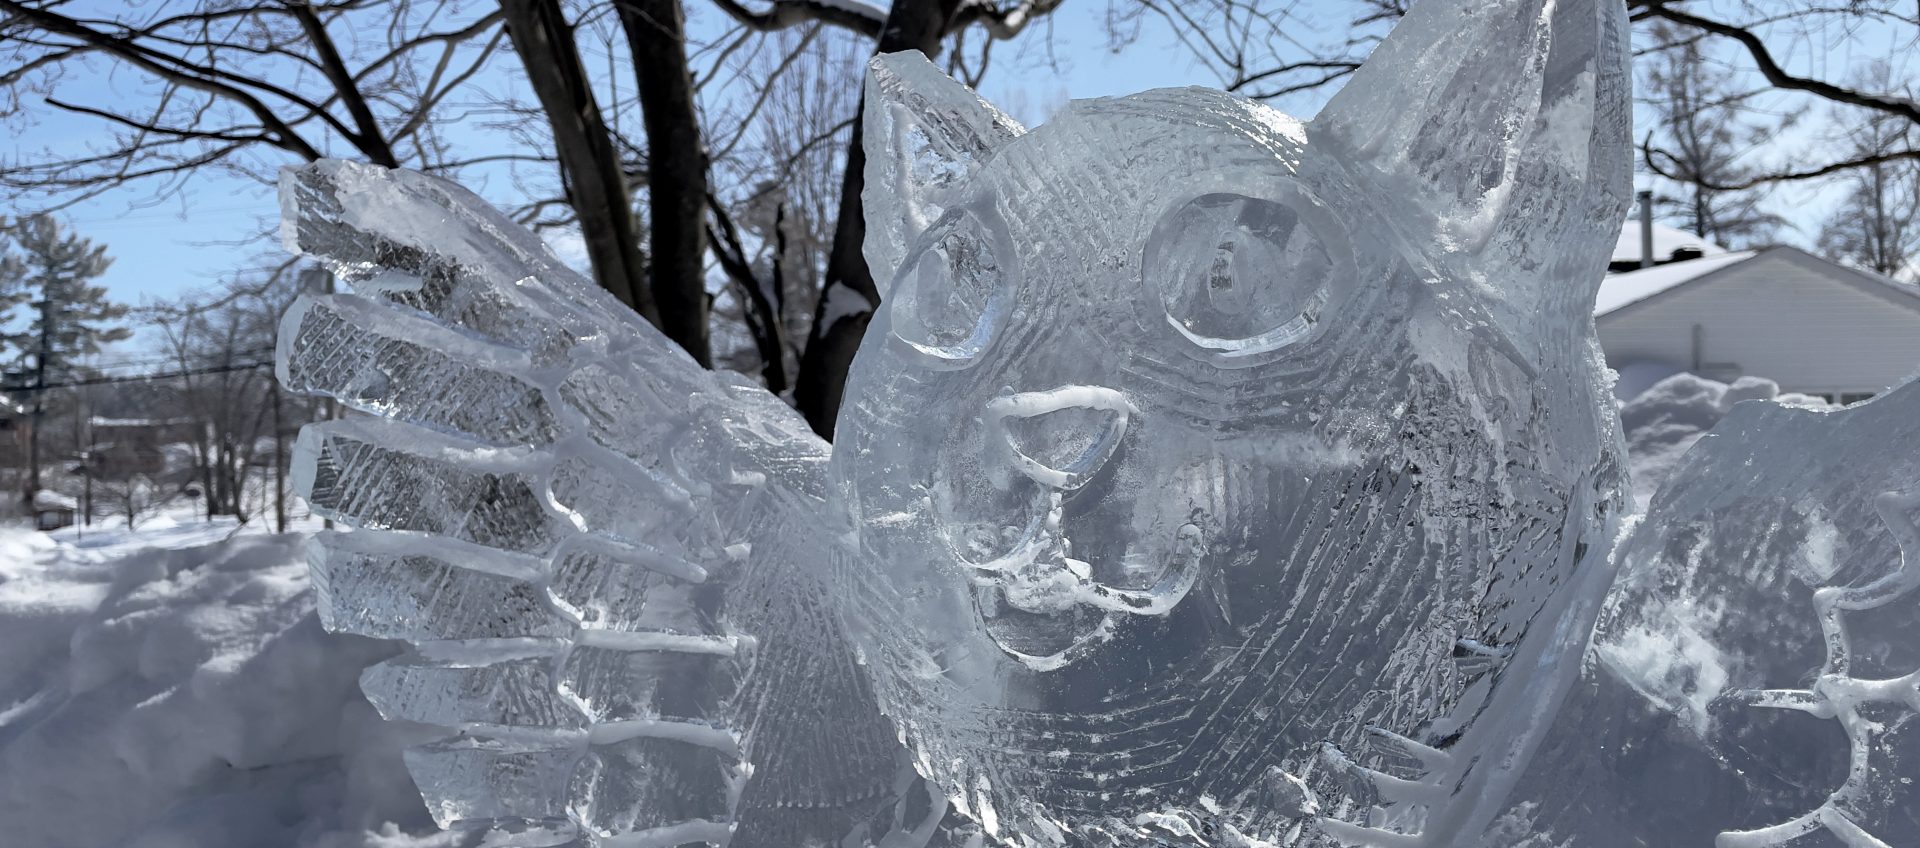 sculpture glace moulin seigneurial de pointe du lac scaled